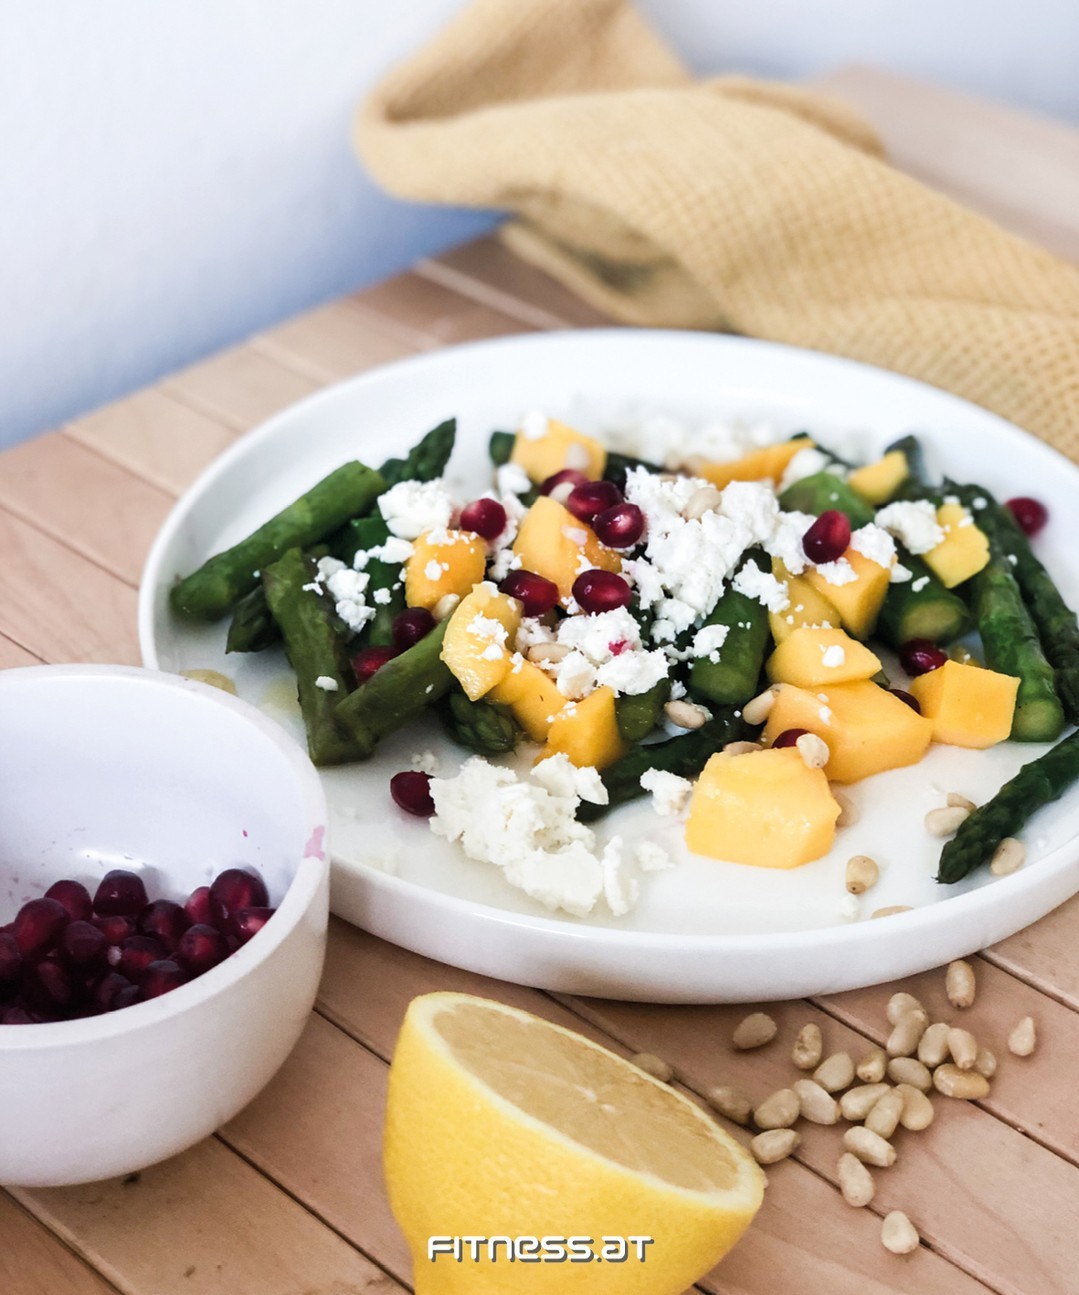 Der Spargel schafft es bei uns immer wieder auf den Tisch und am liebsten in außergewöhnlichen Gerichten 🤩. Wir sind natürlich auch Fans der klassischen Küche, können uns aber genauso für etwas exotischere Rezepte, wie unseren Spargel Mango Salat, begeistern 🥗😋. 

#fitnessat #weilwirfitnessleben #soulfood #foodporn #yummy #foodlover #foodblogger #spargel #asparagus #mango #salat #salad #foodie #healthy #fresh #summer #recipe #foodblog #blog #blogger